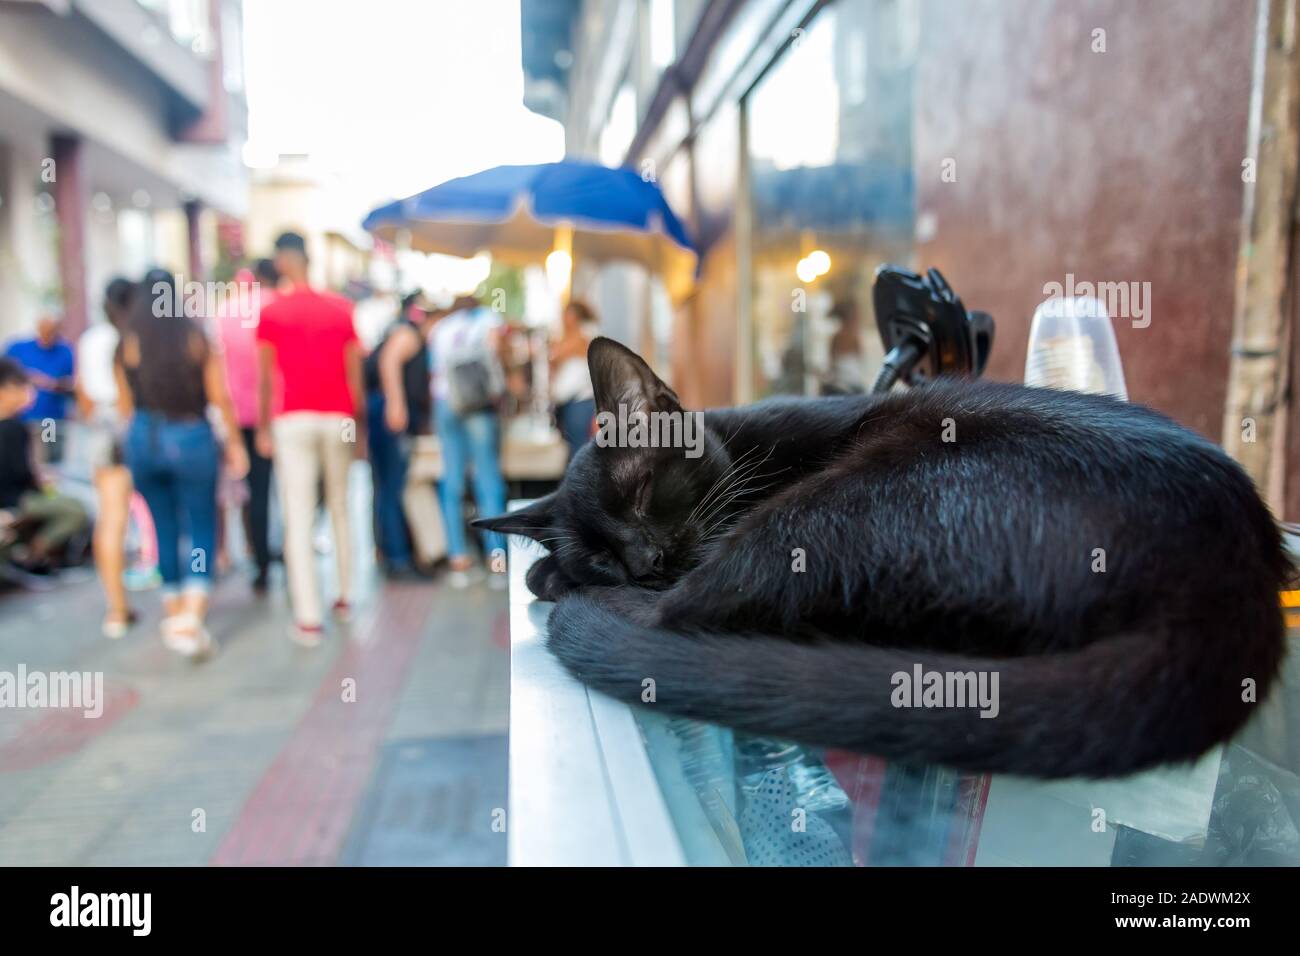 Dramatisches Bild der schwarzen Katze ausruhen und schlafen in einem überfüllten Einkaufszentrum in Santo Domingo, Dominikanische Republik. Stockfoto